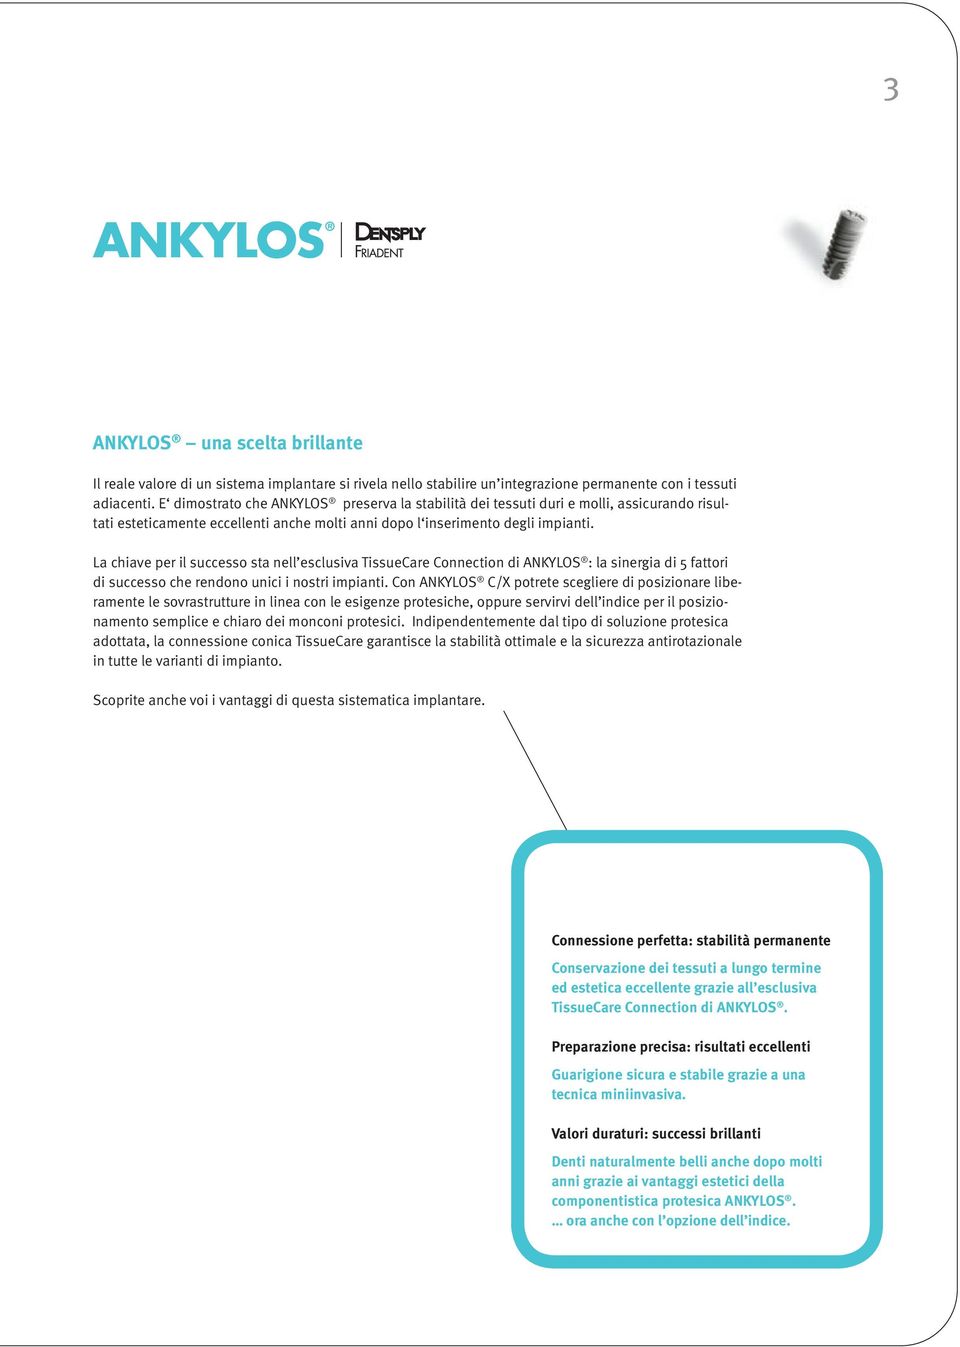 La chiave per il successo sta nell esclusiva TissueCare Connection di ANKYLOS : la sinergia di 5 fattori di successo che rendono unici i nostri impianti.